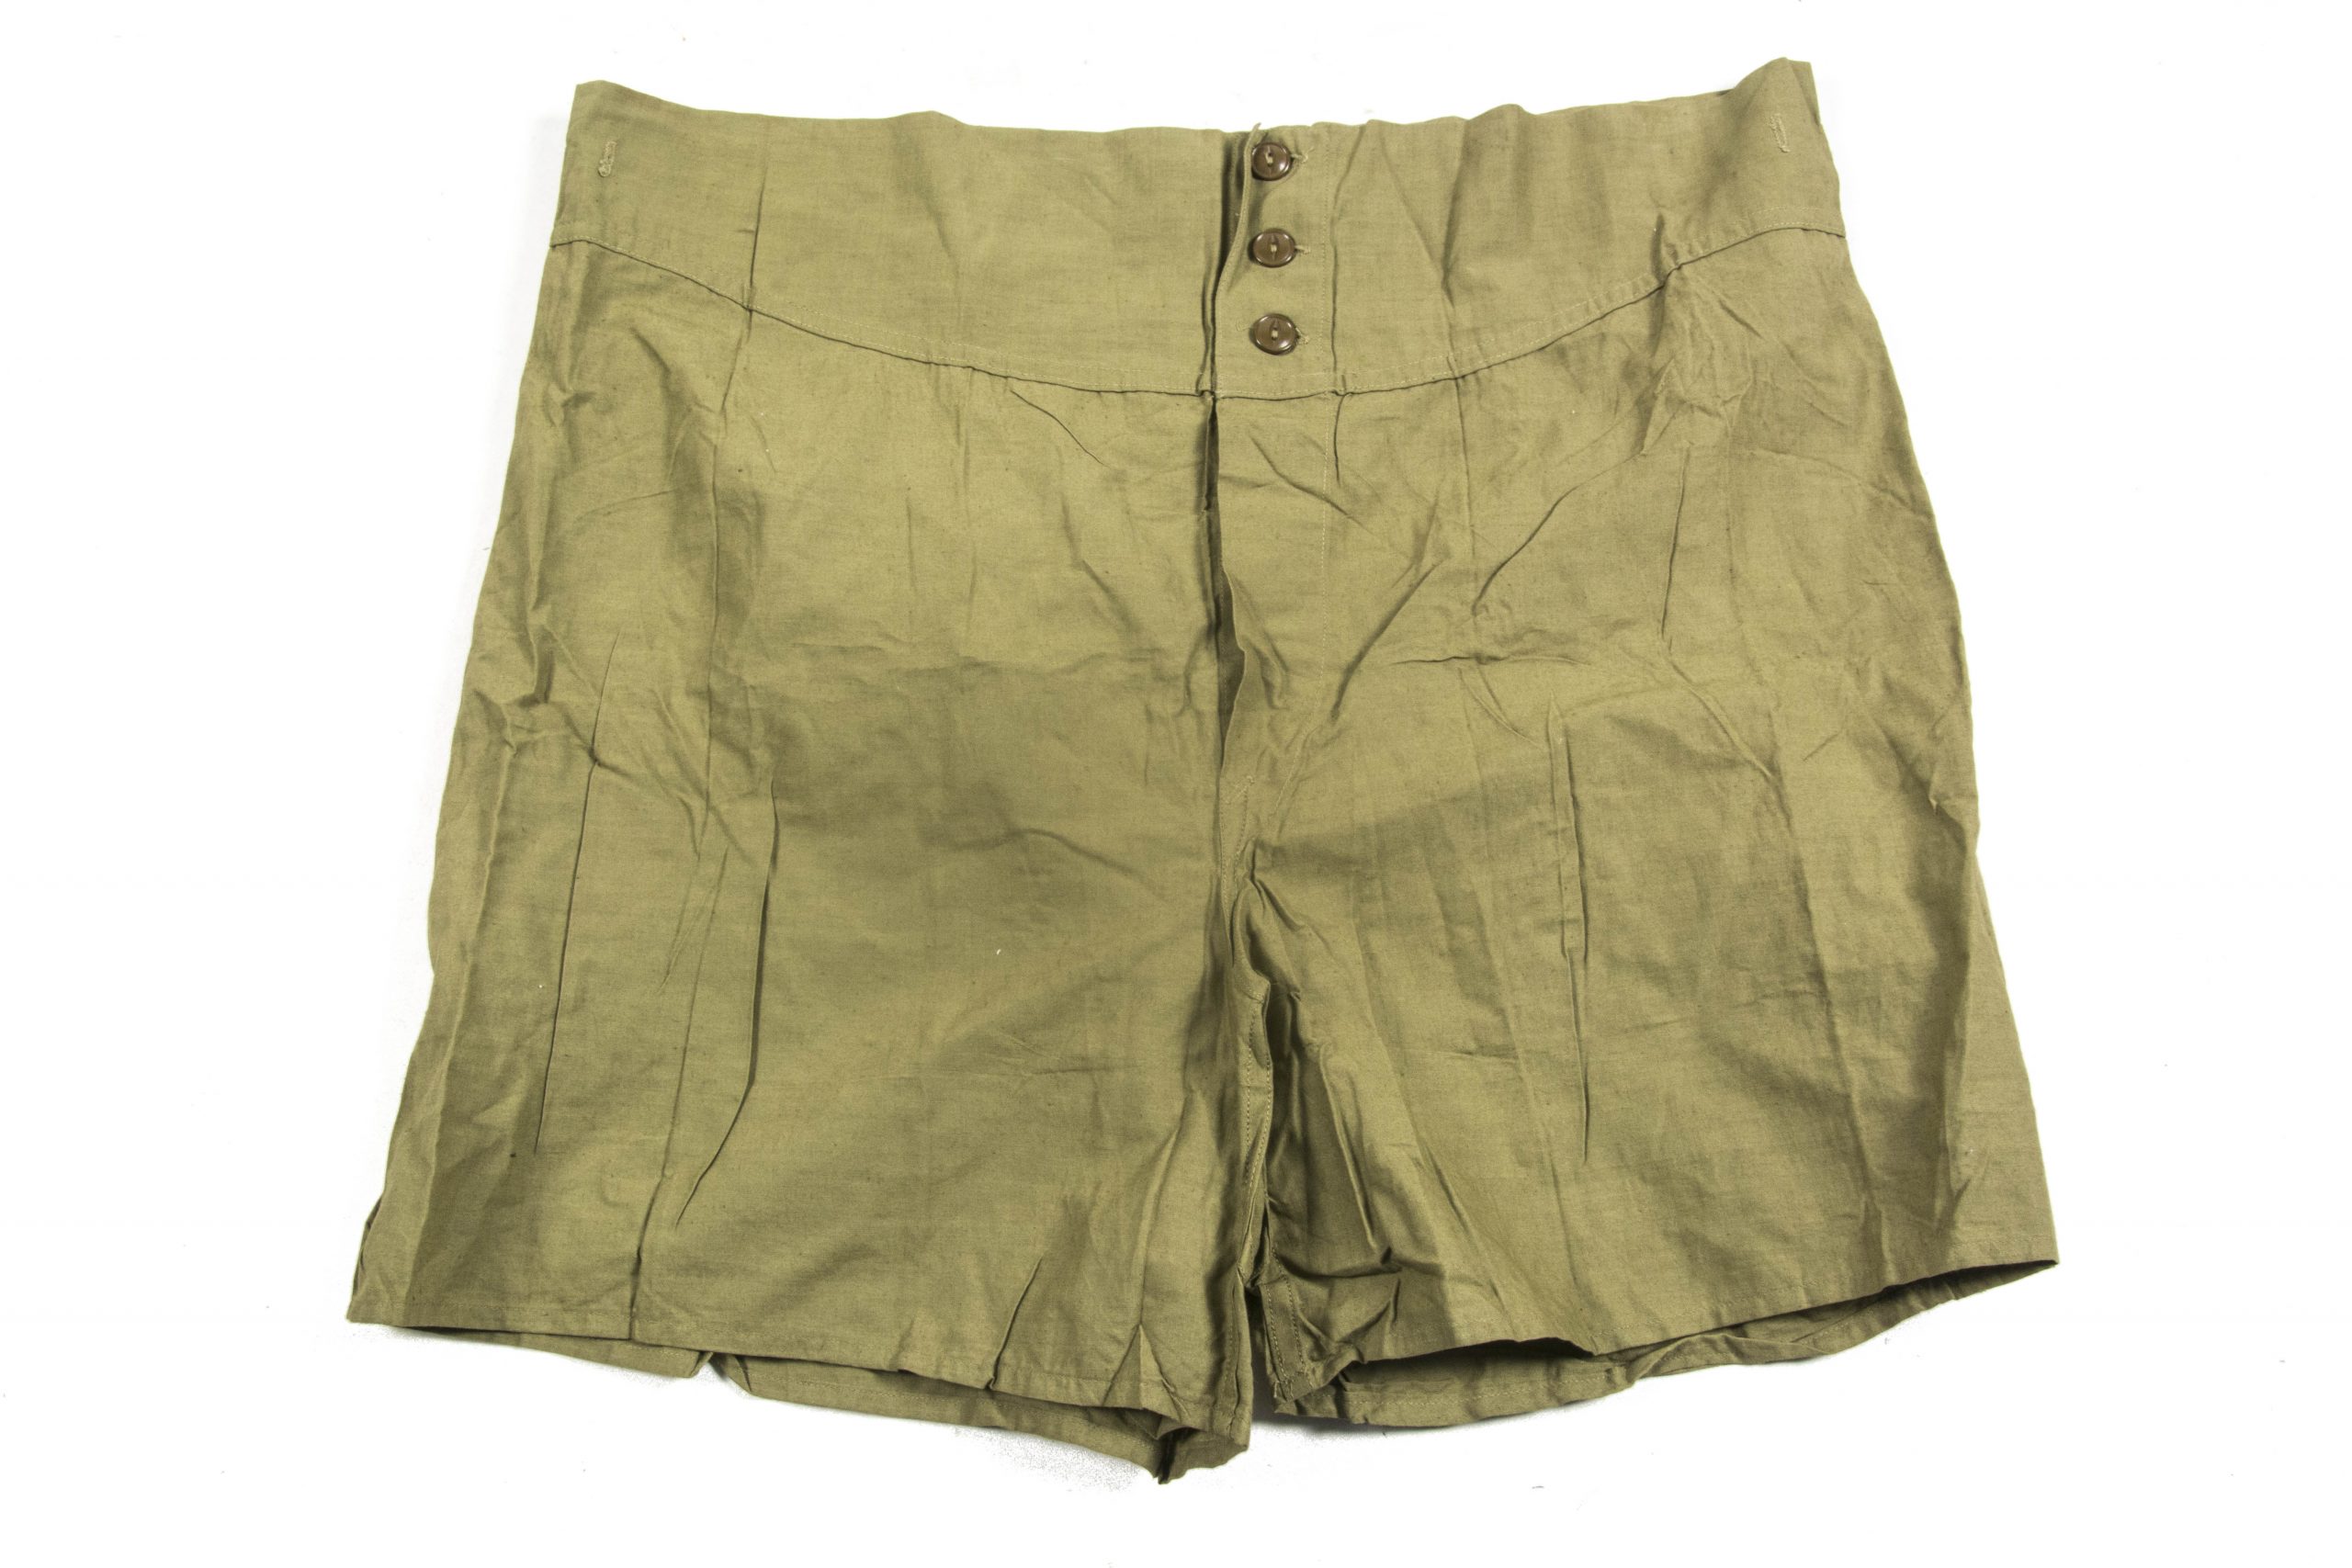 US army underwear size 38 marked Decatur Garment Co. – fjm44